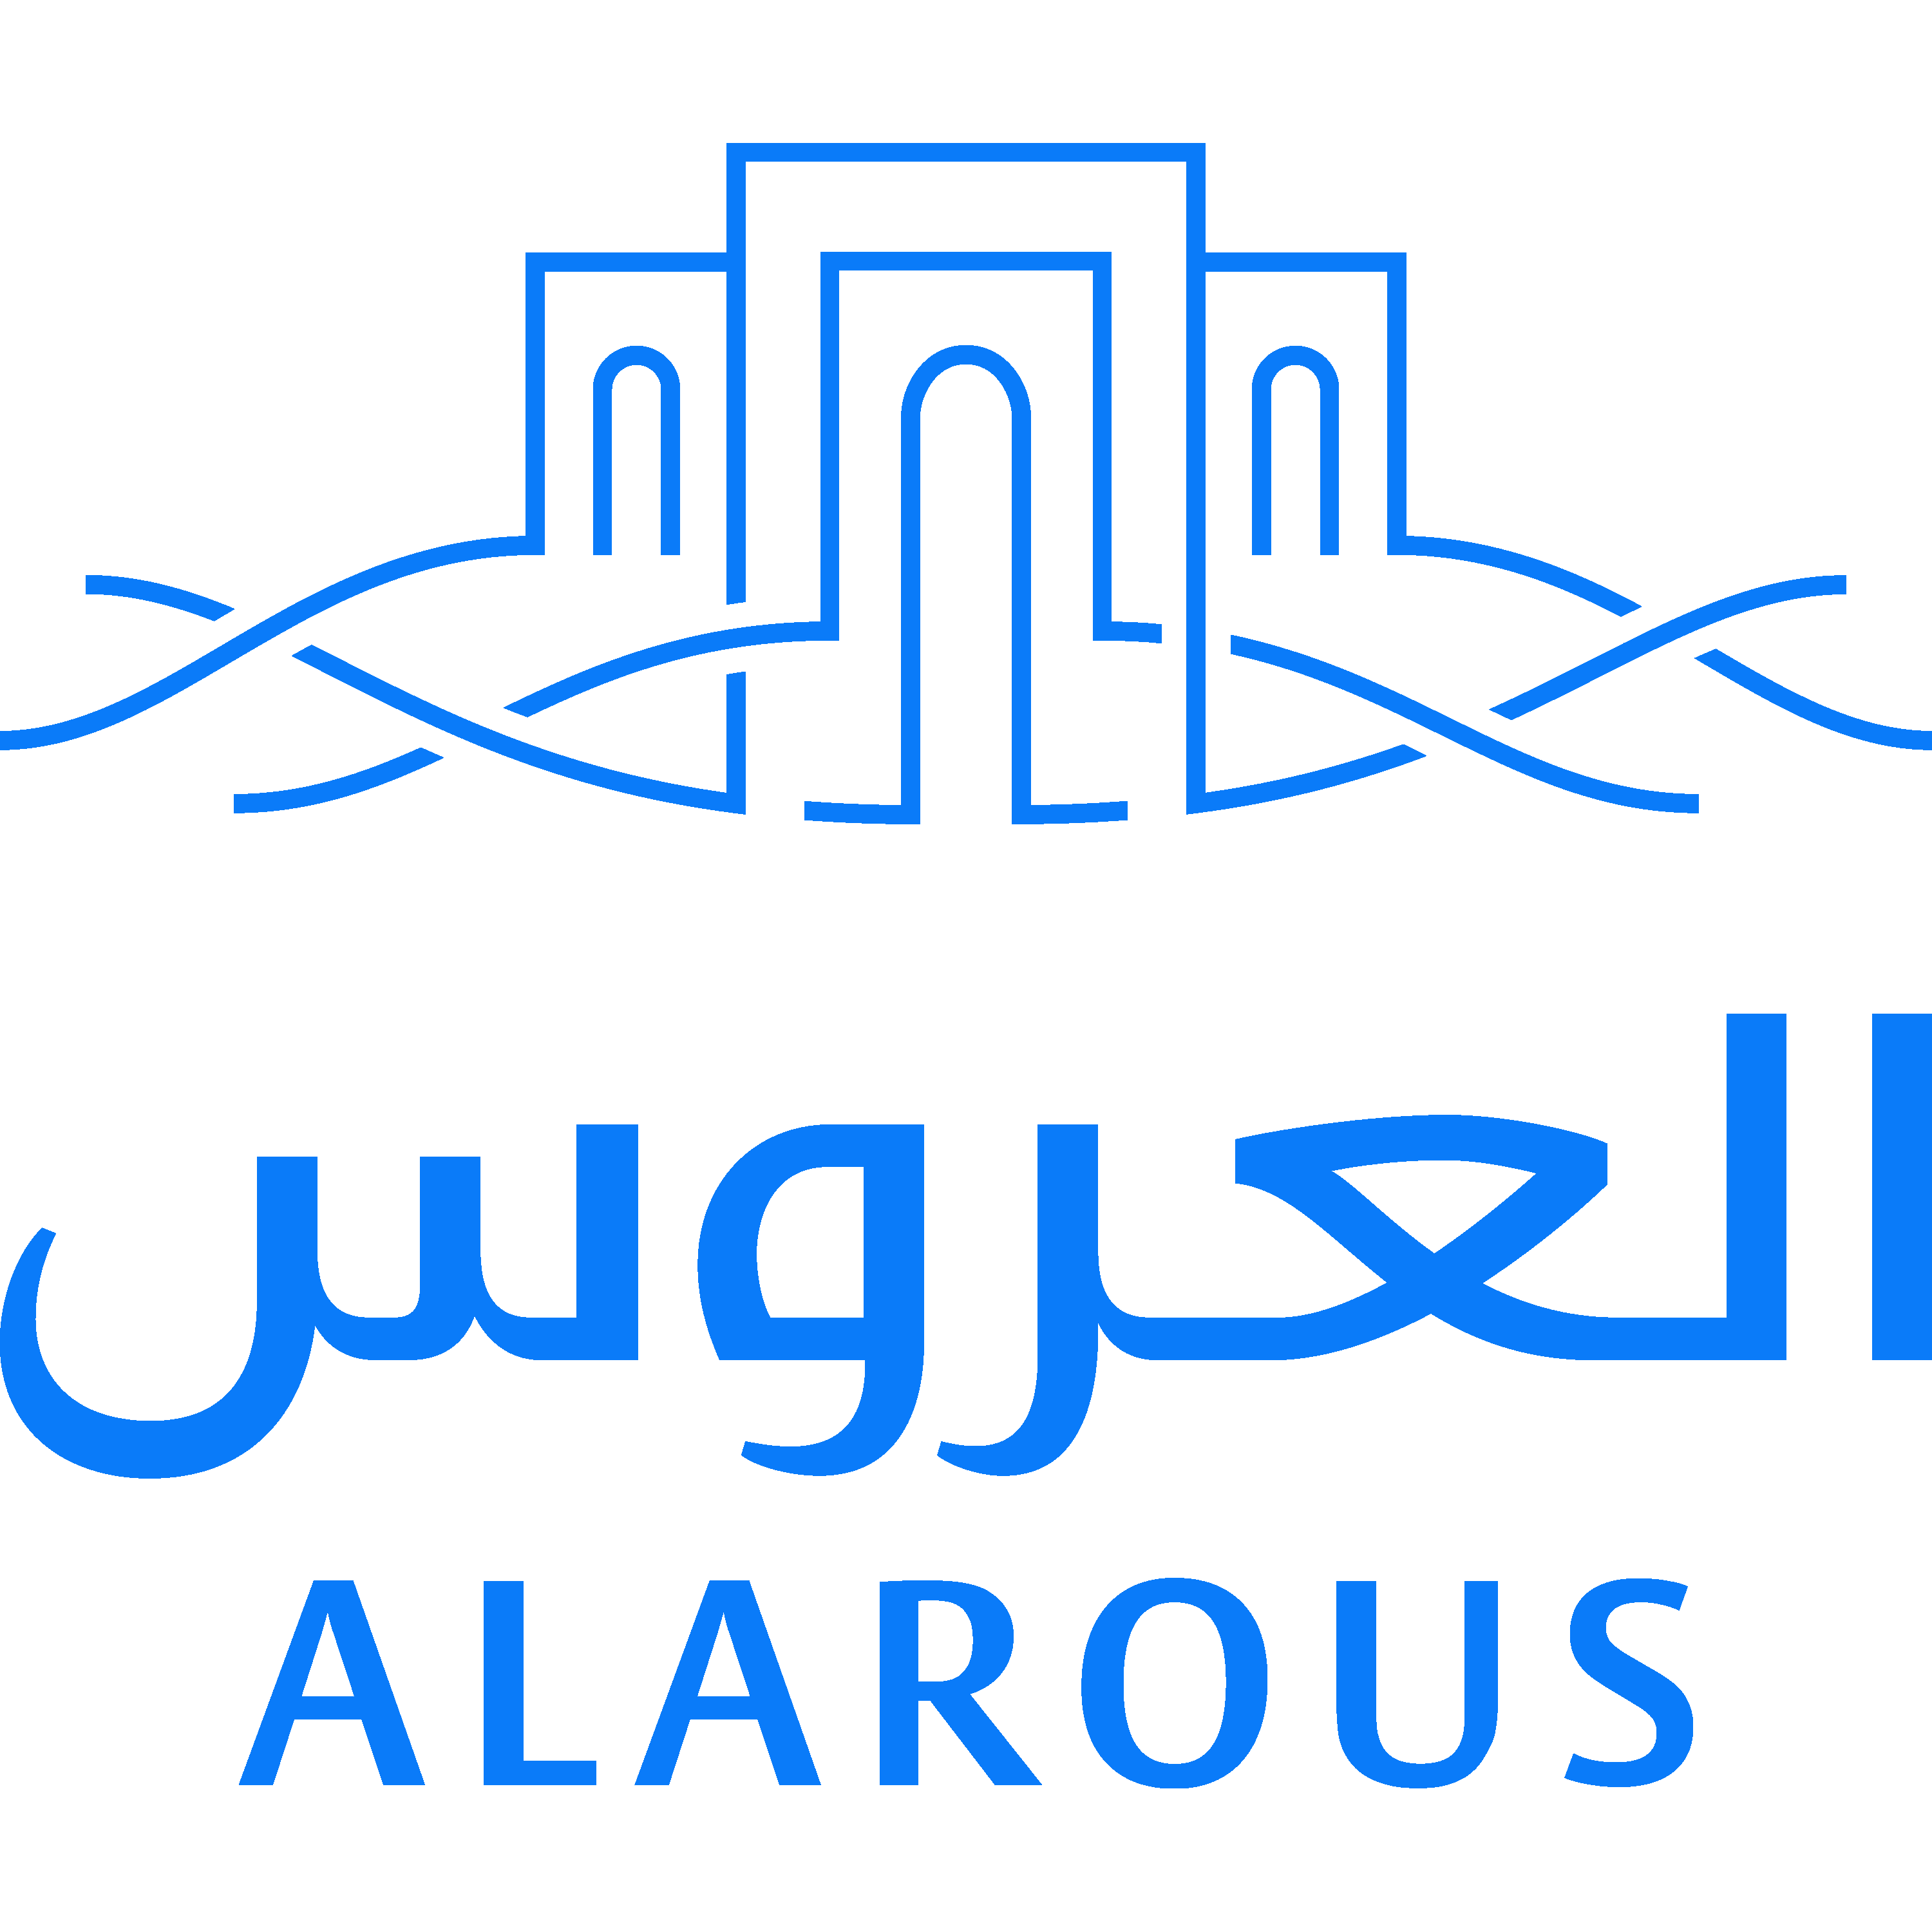 Alarous Logo  Transparent Clipart